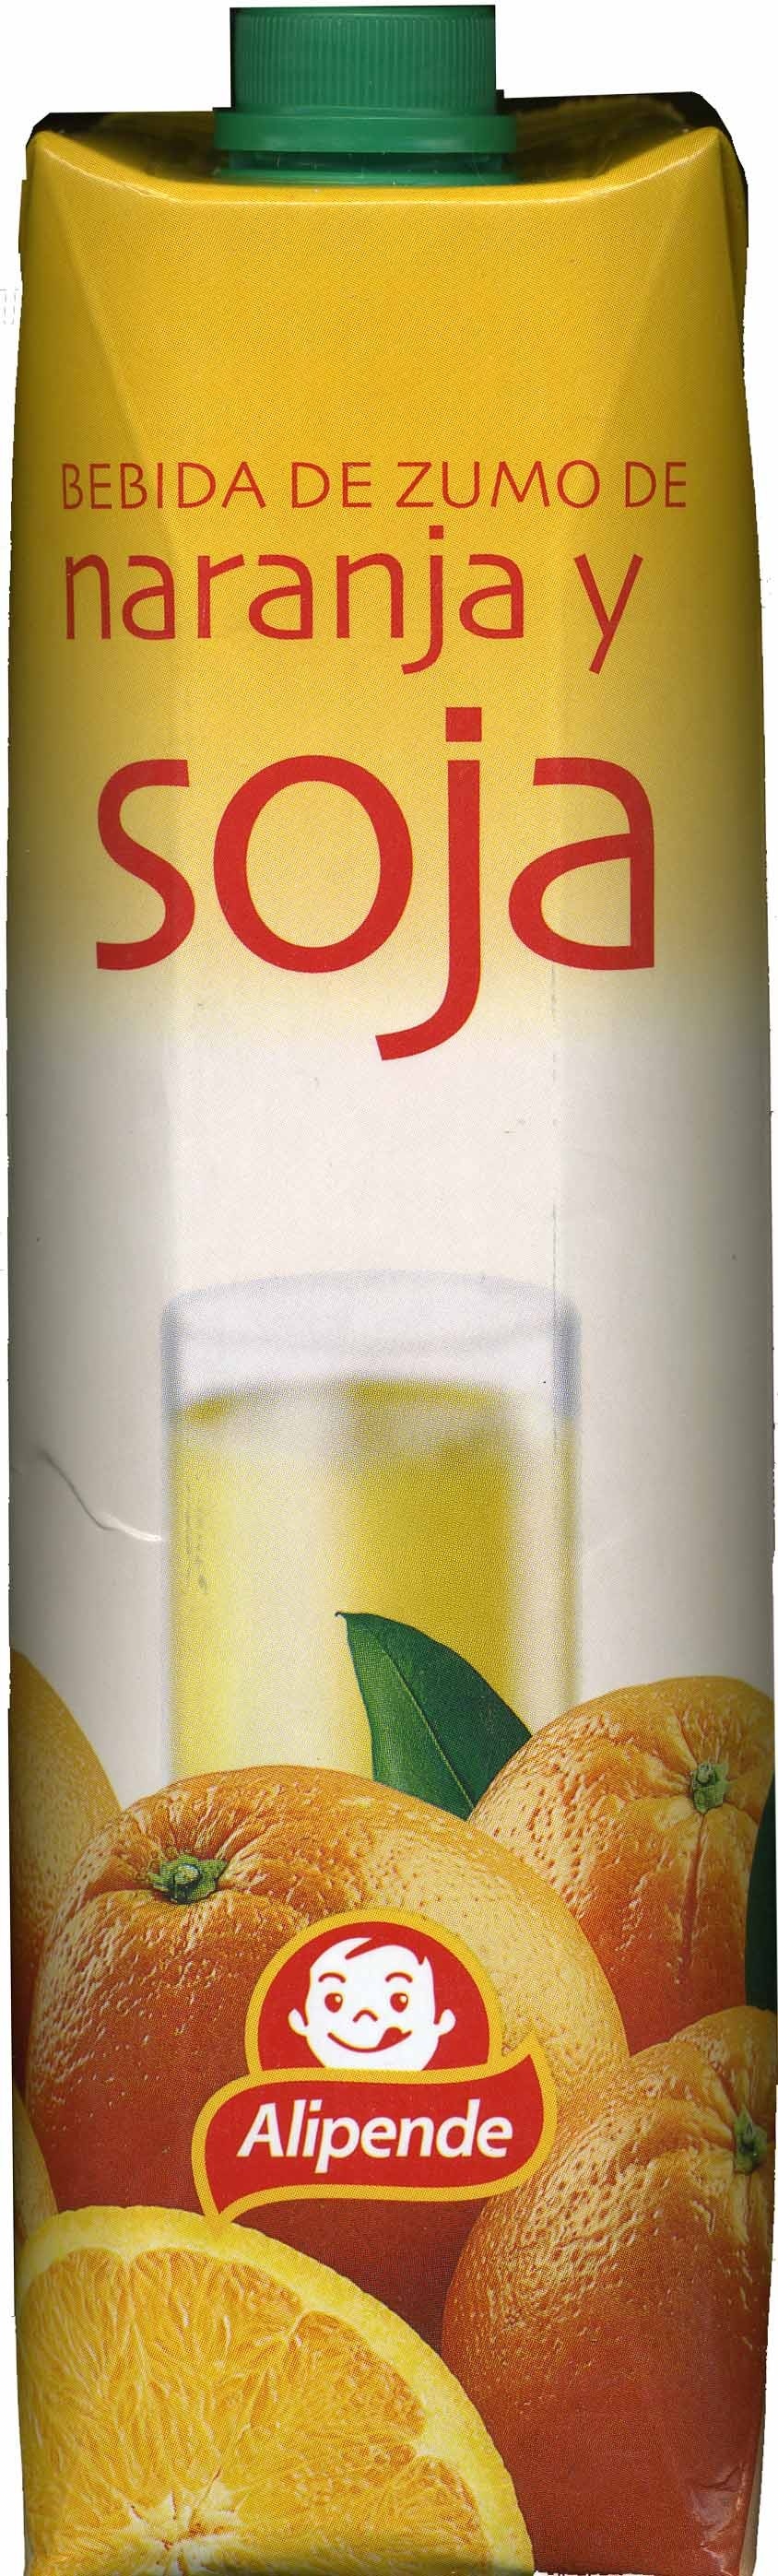 Bebida de zumo y soja "Alipende" Naranja - Producte - es